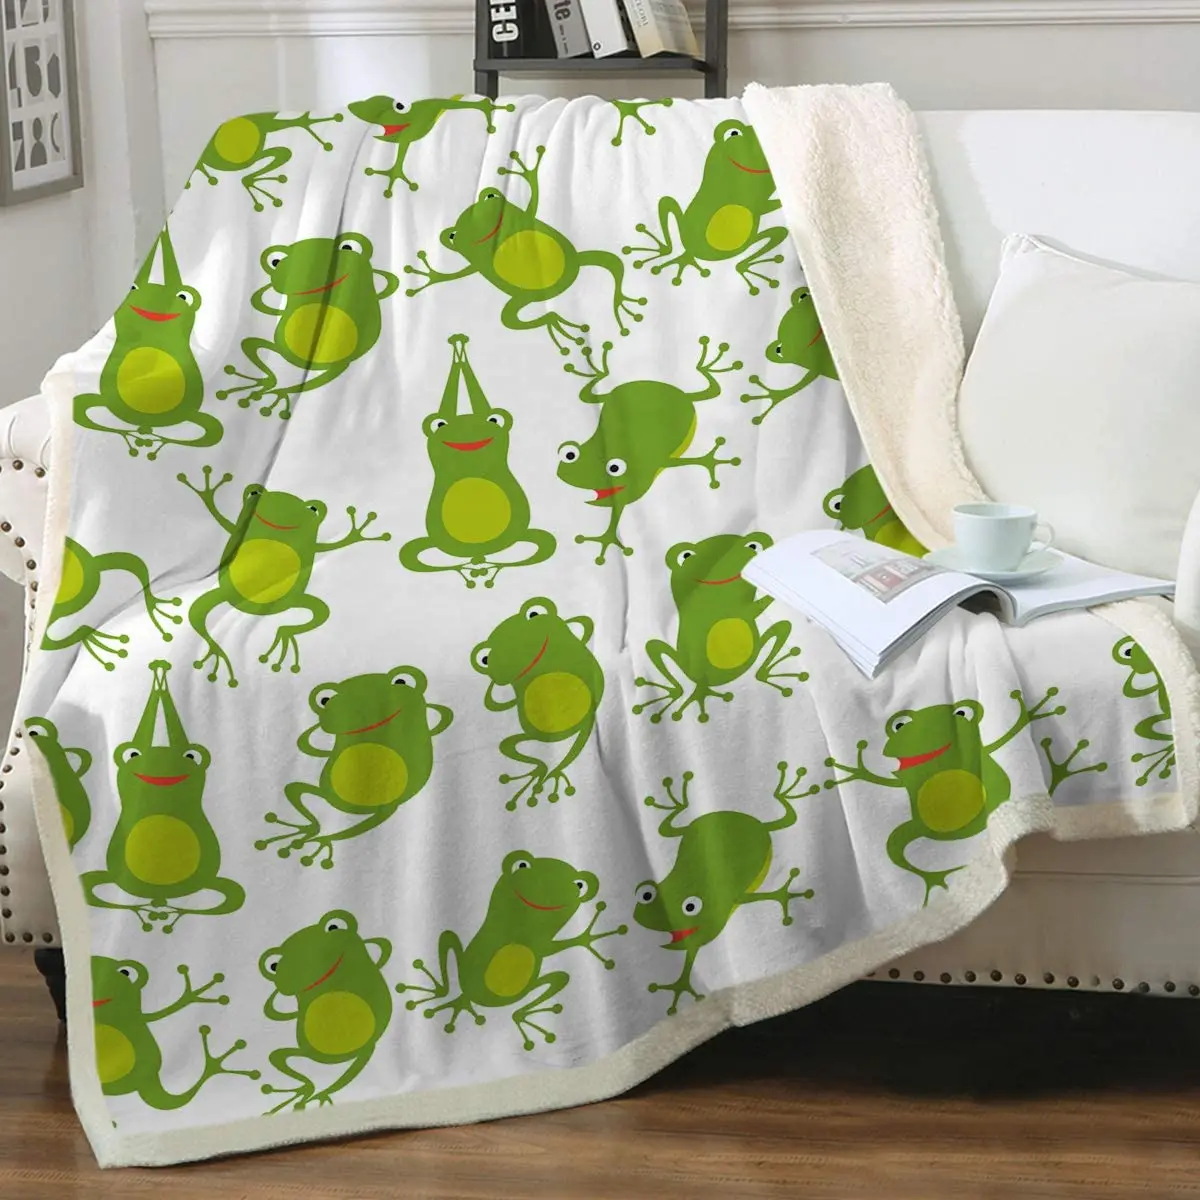 

Sleepwish Aerobics Frog Sherpa Fleece Blanket for Kids Teens Girls Green Cartoon Cute Animals Print Soft Cozy